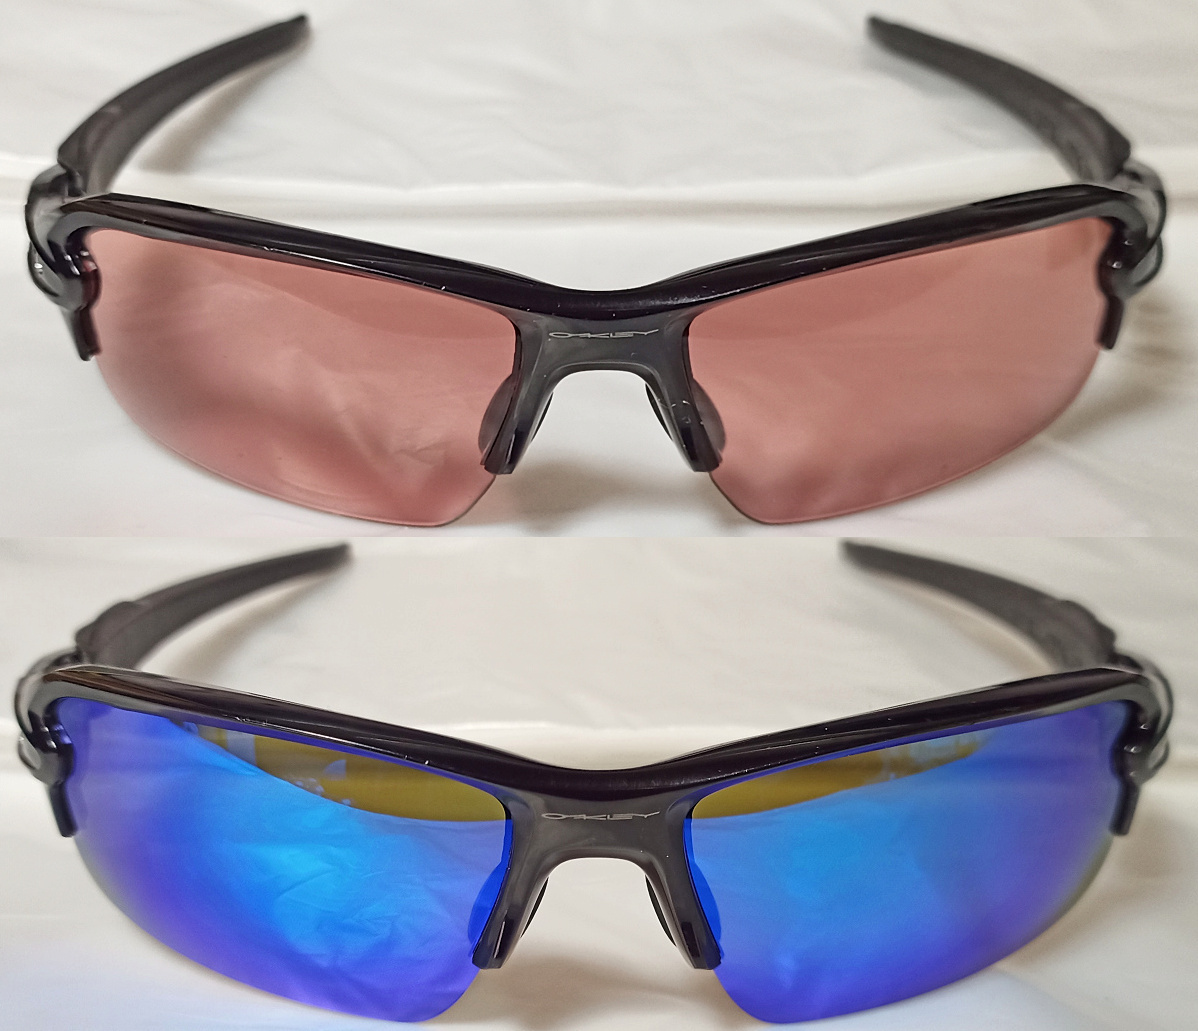  бесплатная доставка поляризирующая линза имеется Oacley f подставка 2.0 Азия Fit Fit солнцезащитные очки I одежда Golf велосипед OAKLEY FLAK2.0 Eyewear